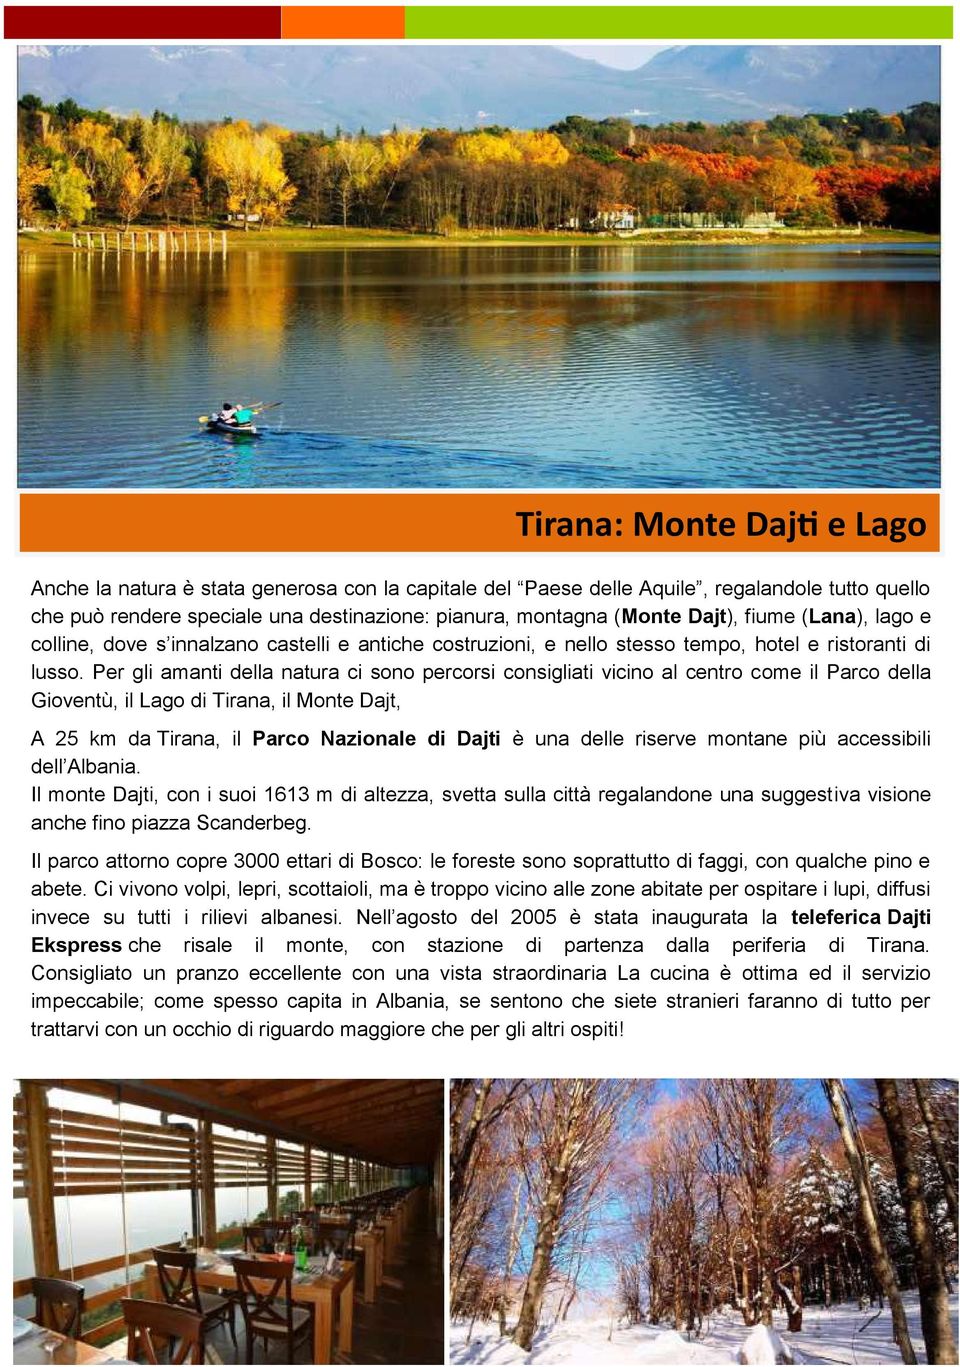 Per gli amanti della natura ci sono percorsi consigliati vicino al centro come il Parco della Gioventù, il Lago di Tirana, il Monte Dajt, A 25 km da Tirana, il Parco Nazionale di Dajti è una delle